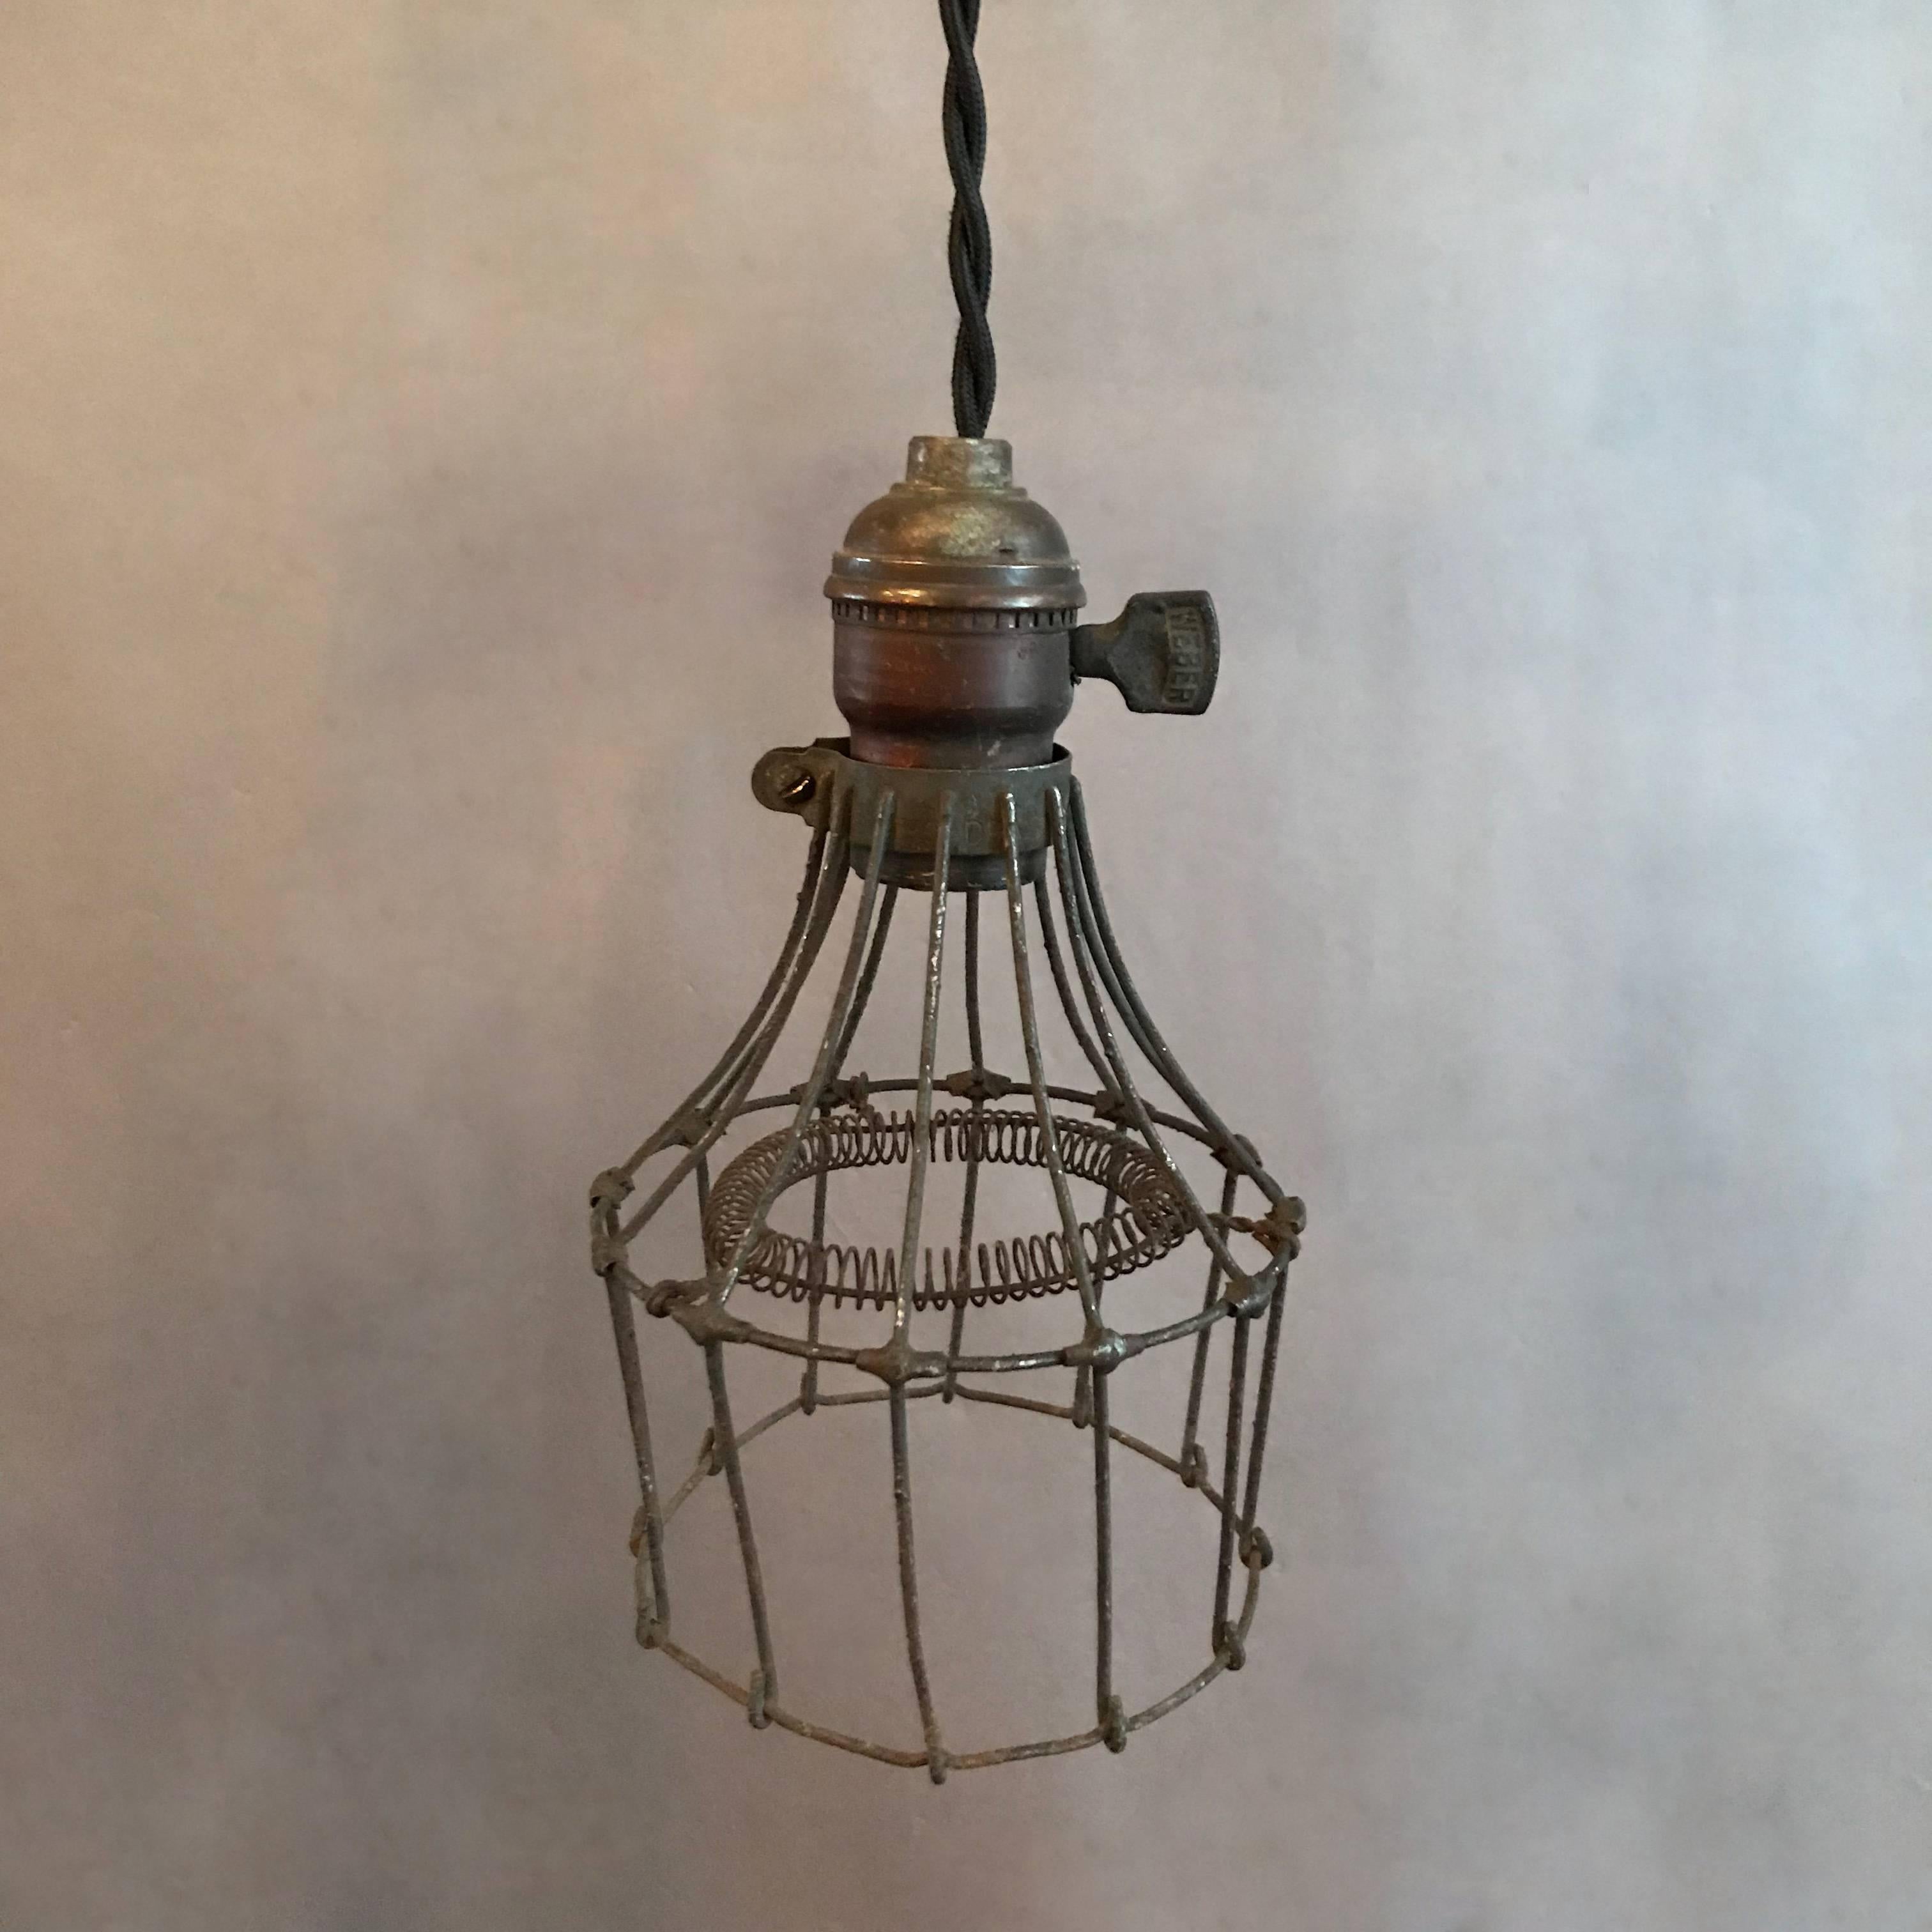 Rare et inhabituelle lampe suspendue industrielle des années 1920, composée d'une cage en fil d'acier, d'une protection intérieure pour les ampoules et d'une garniture en laiton avec interrupteur. Le luminaire est nouvellement câblé pour accepter